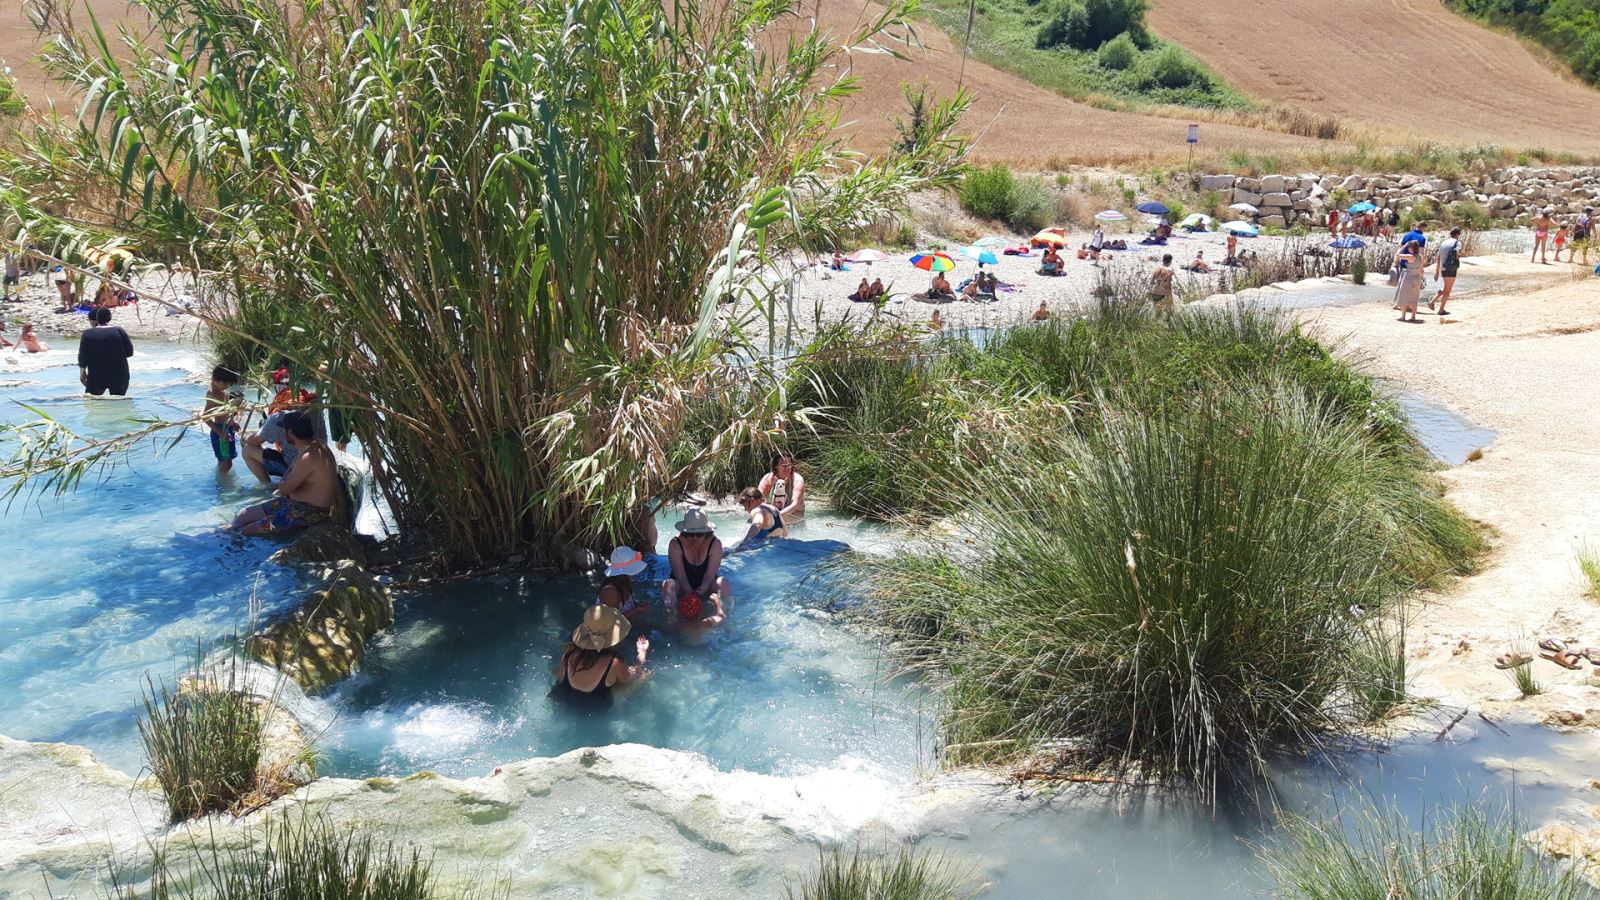 Warmwaterbronnen in Toscane | Wildzwemplekken